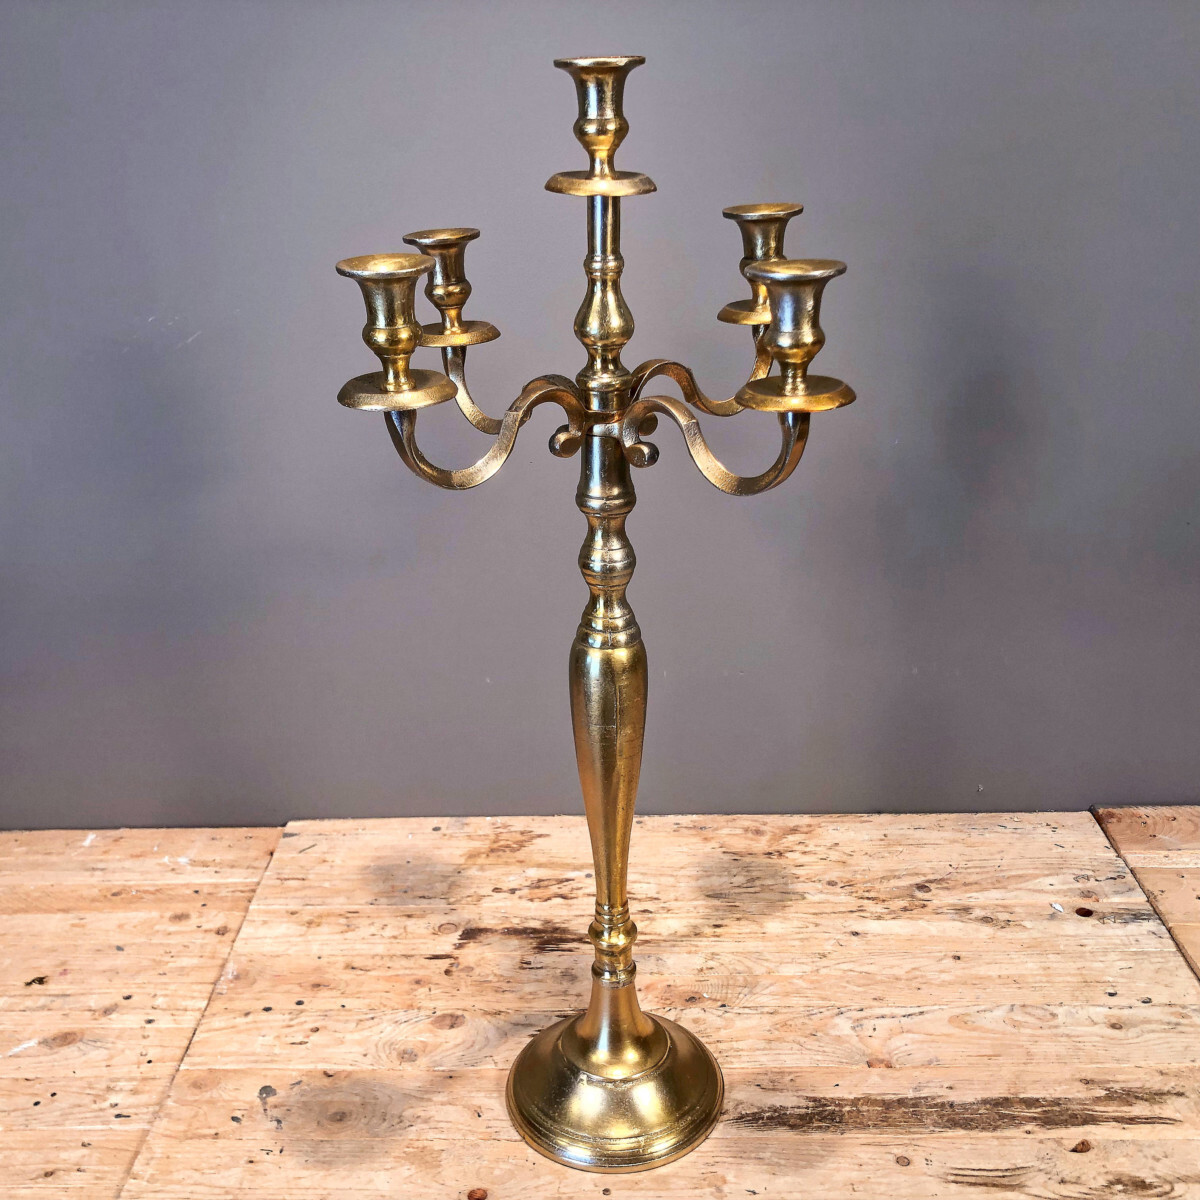 Decorative Candlestick Five Candles Metallic Aluminum Gold 75cm – New Arrivals